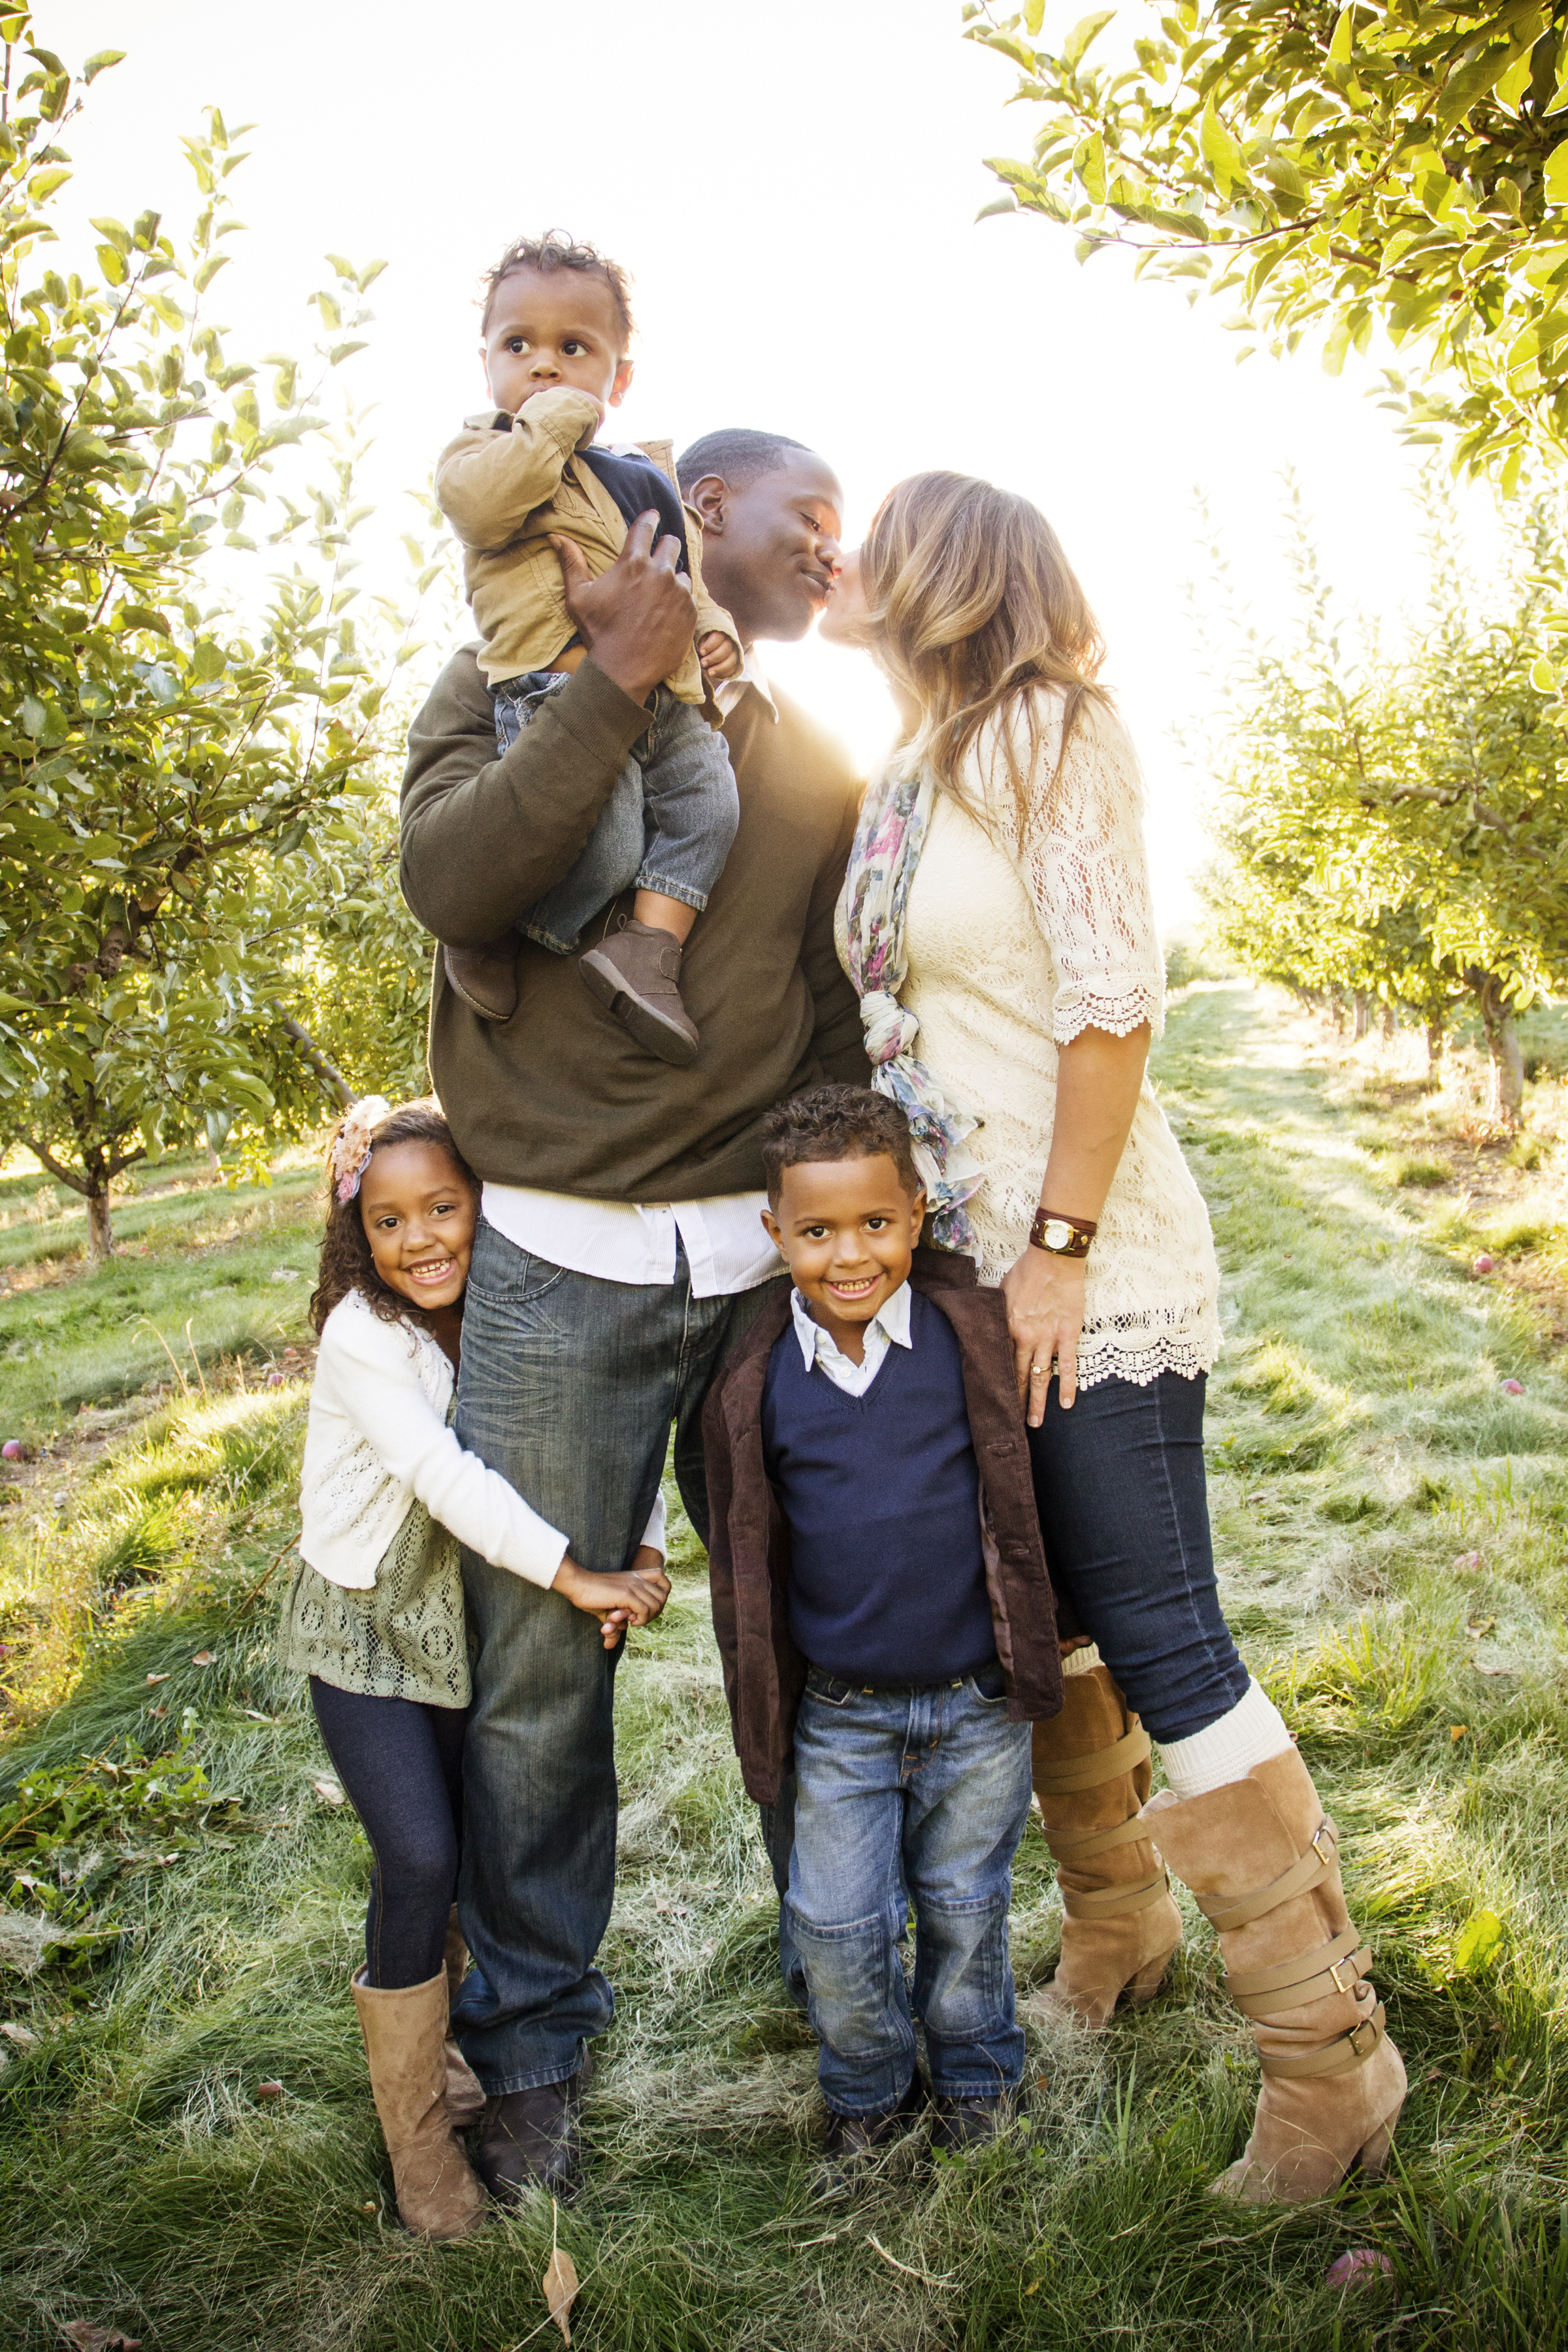 Une famille multiethnique est photographiée en train de passer un merveilleux moment ensemble | Source : Shutterstock